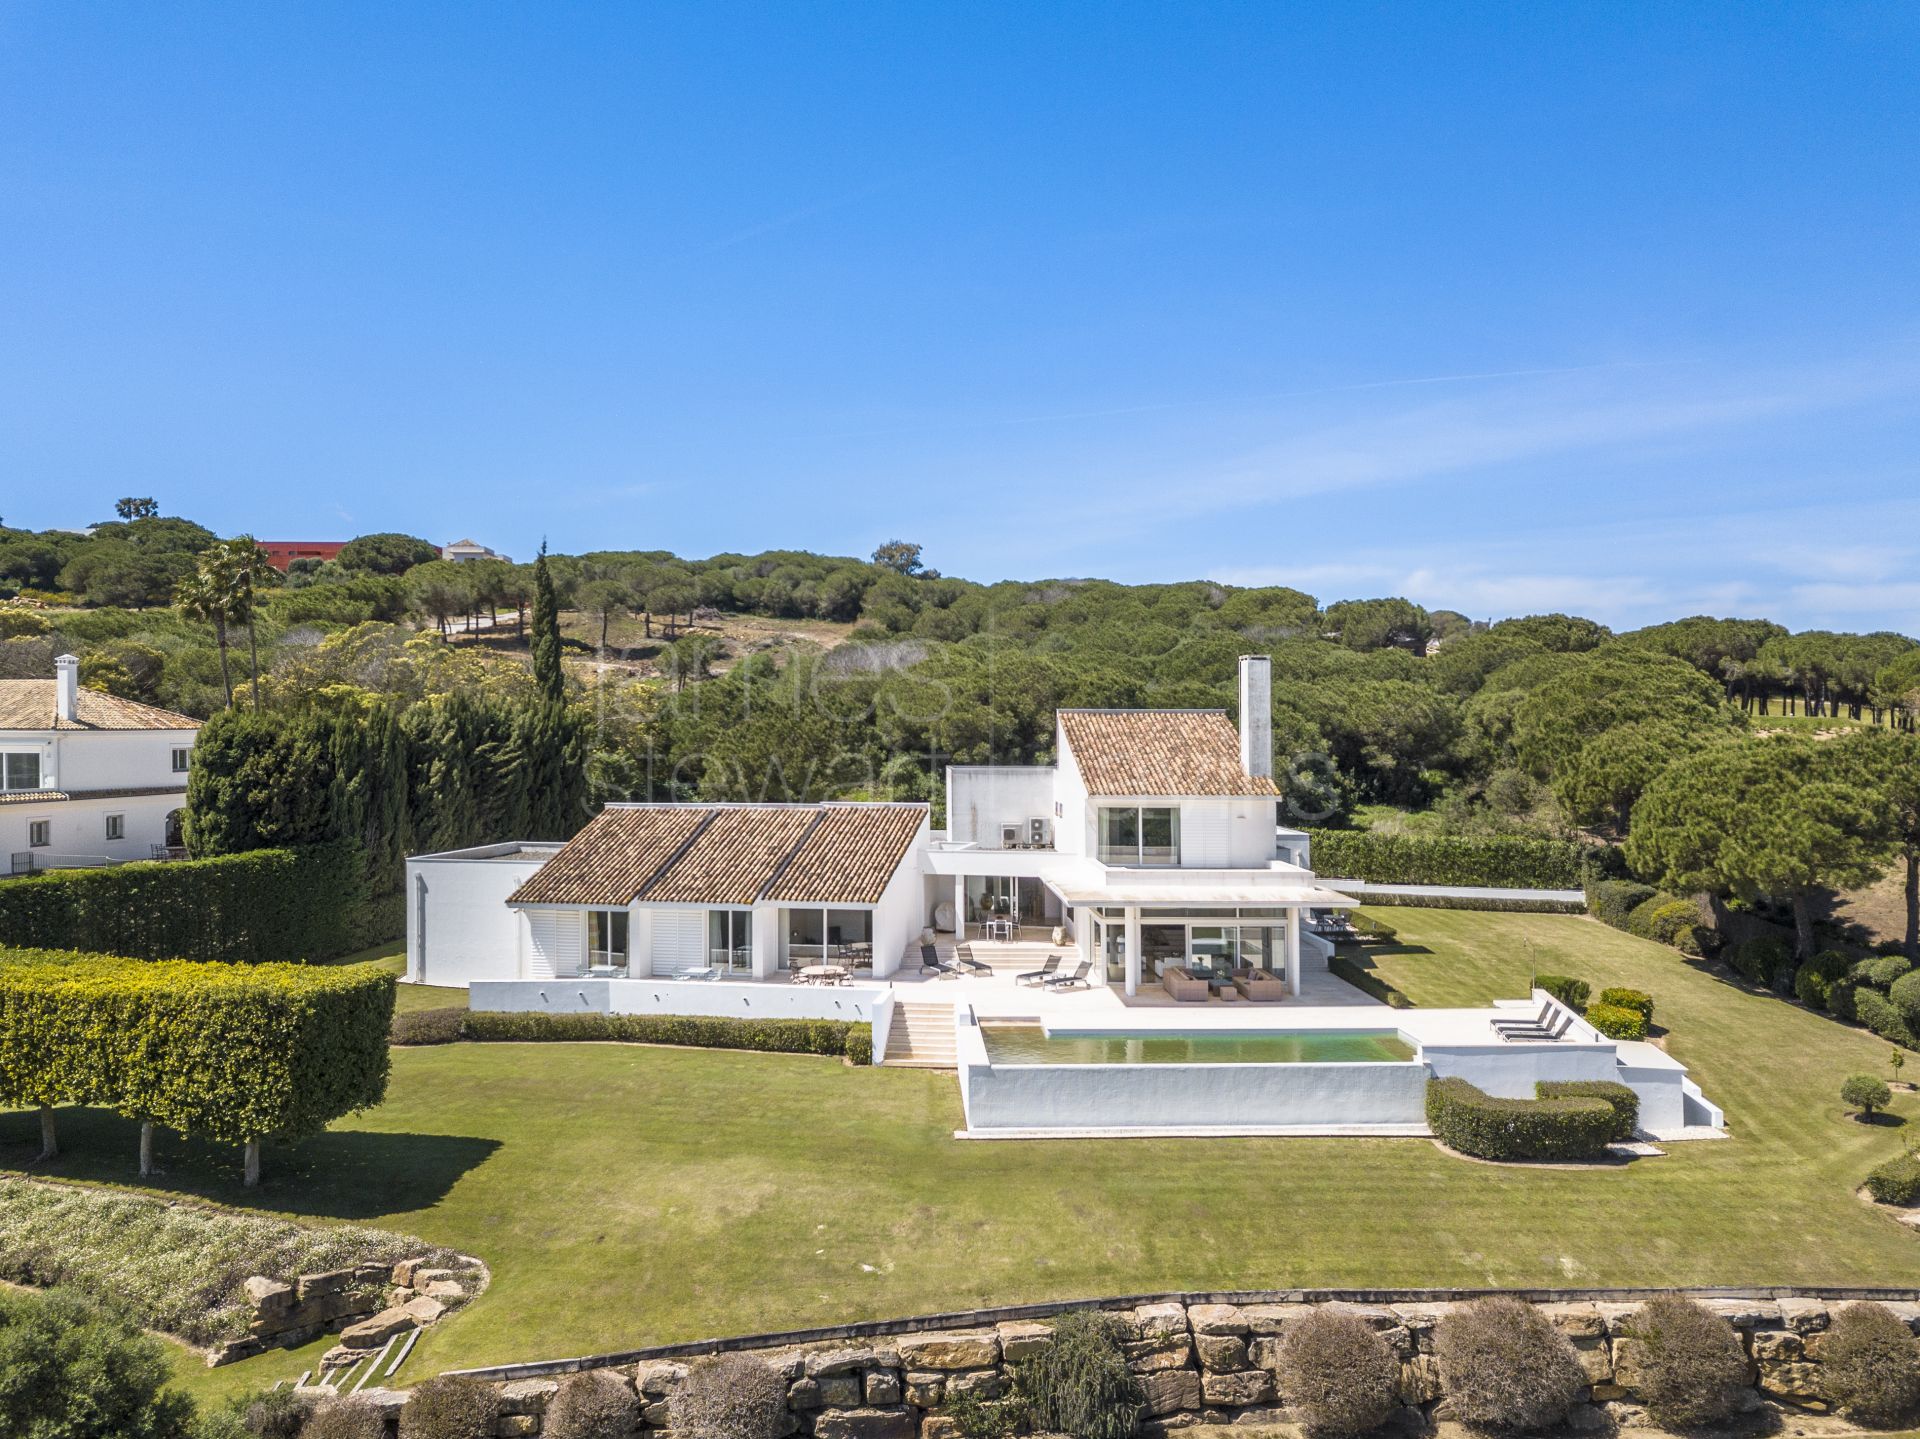 Villa en primera línea de golf en Almenara con vistas impresionantes